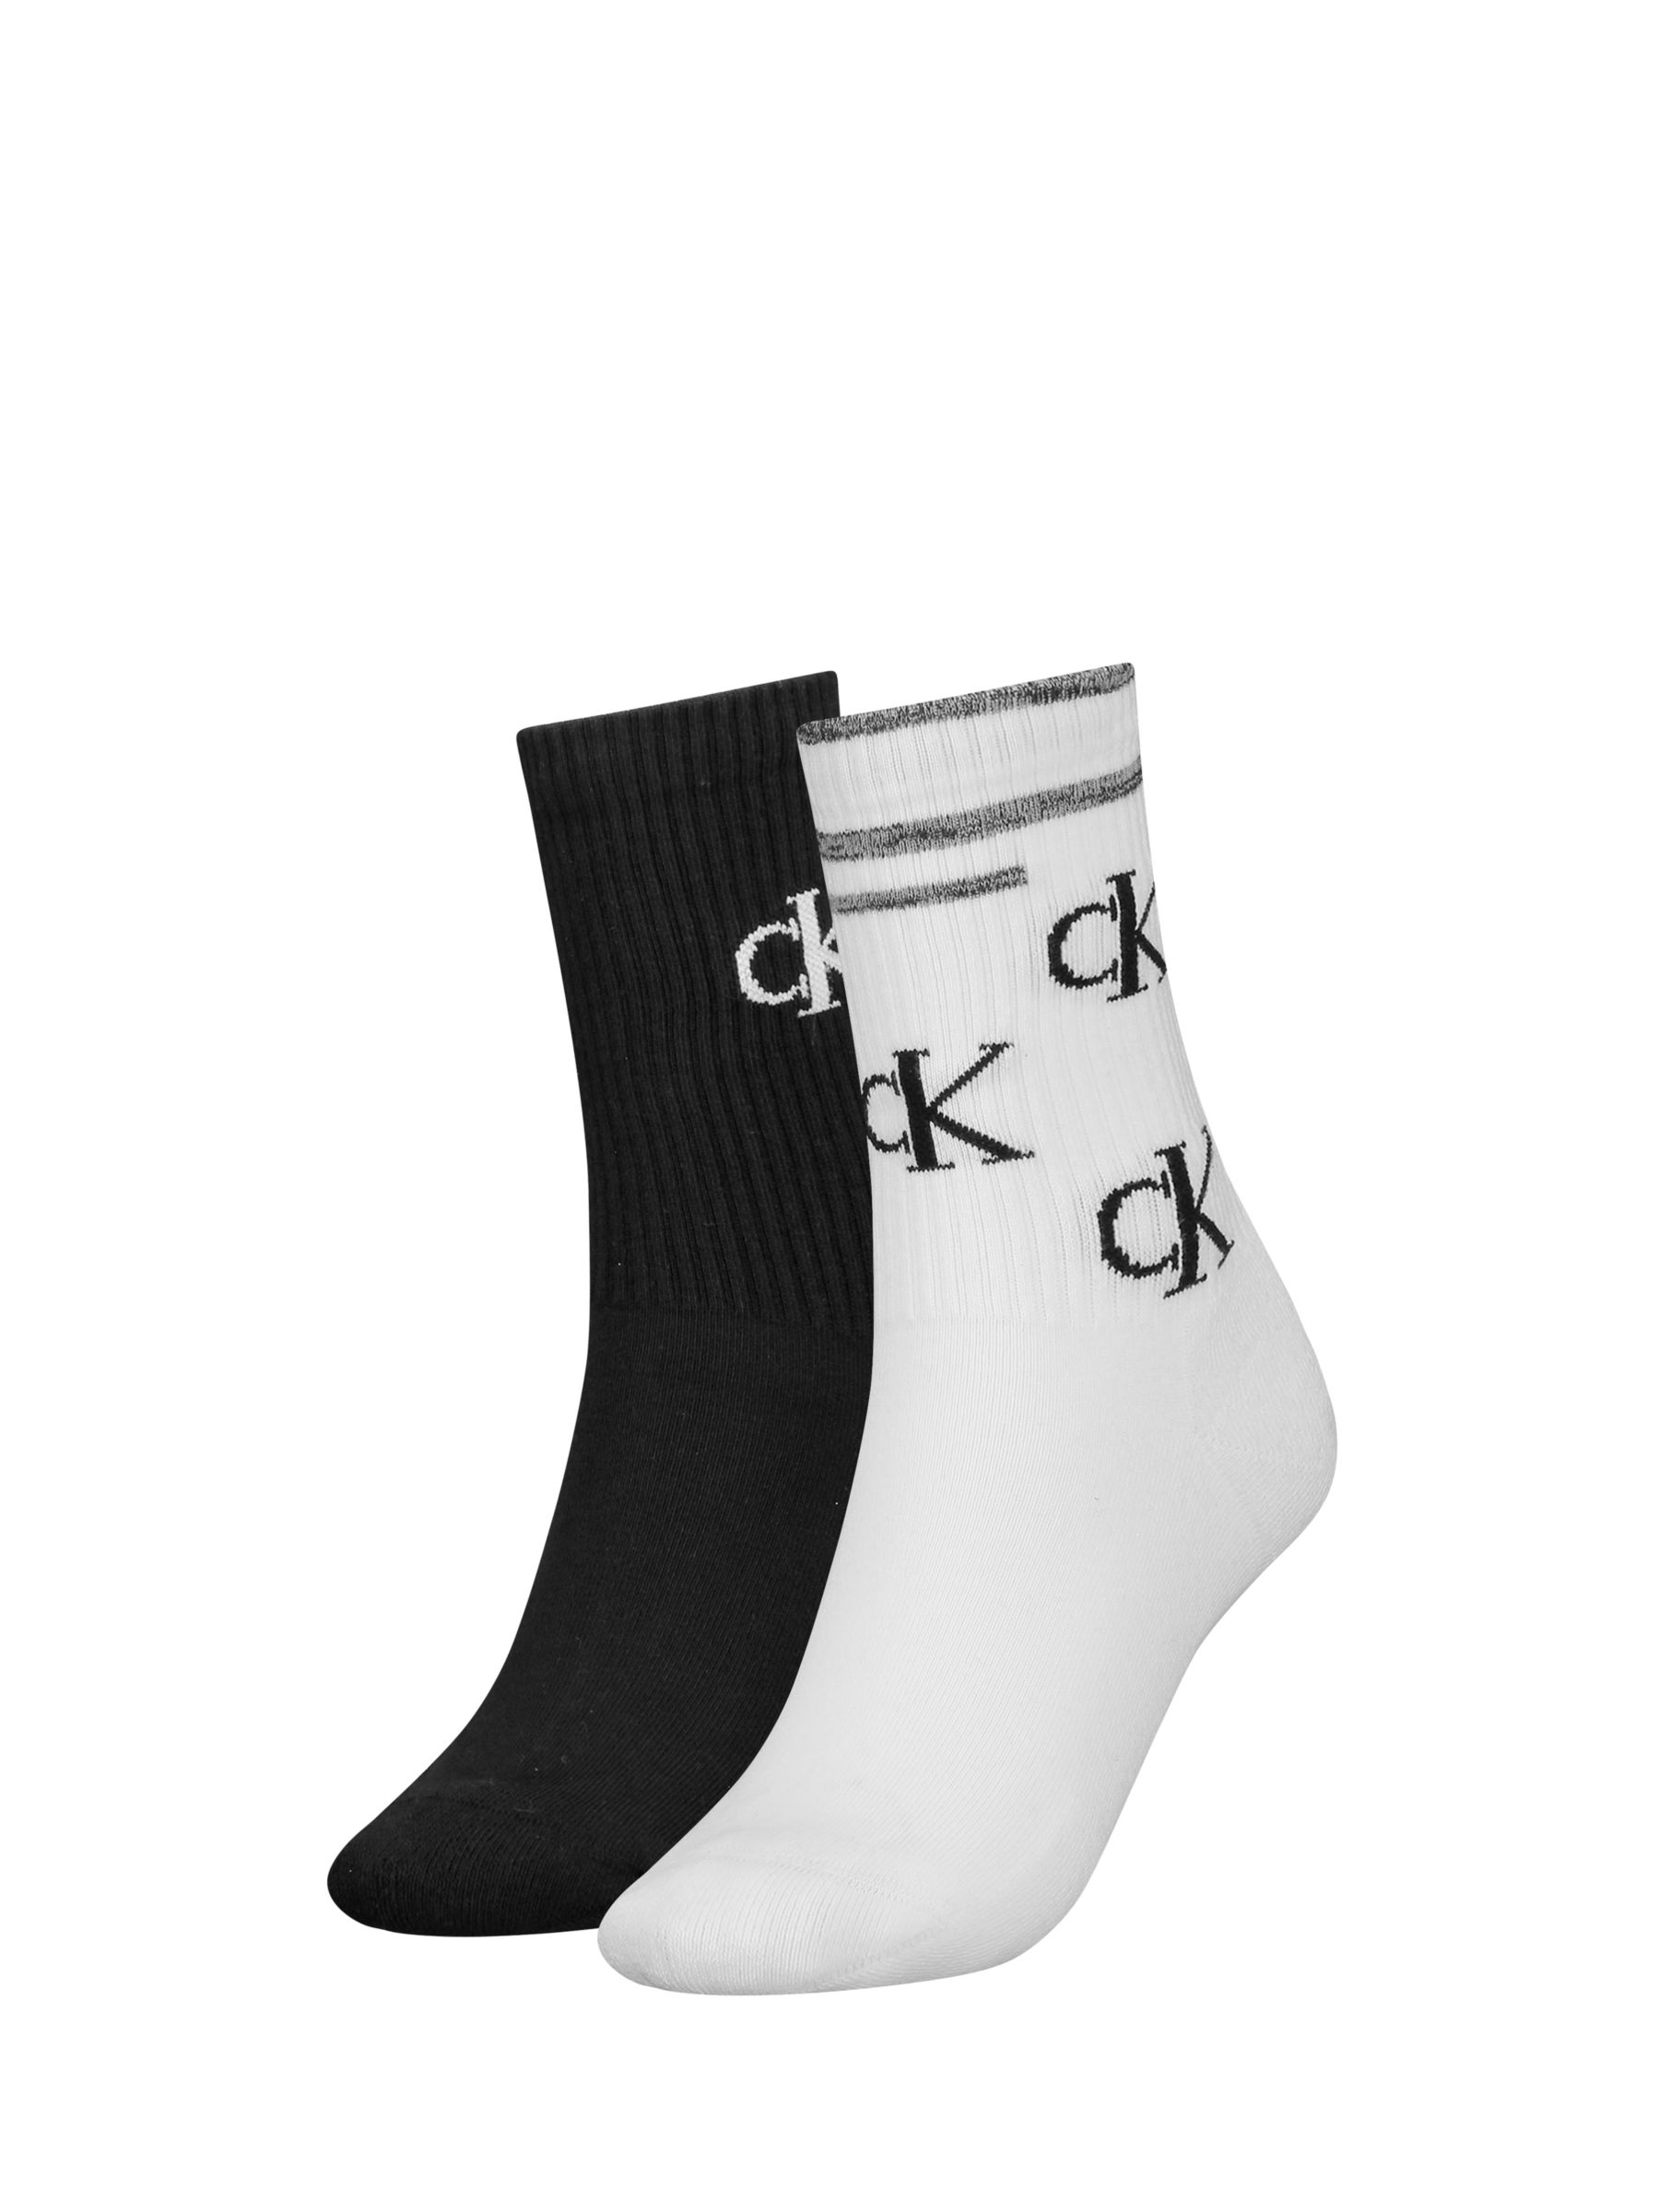 Calvin Klein Scattered Logo Ankle Socks, 2 Pack, White/Black at John ...